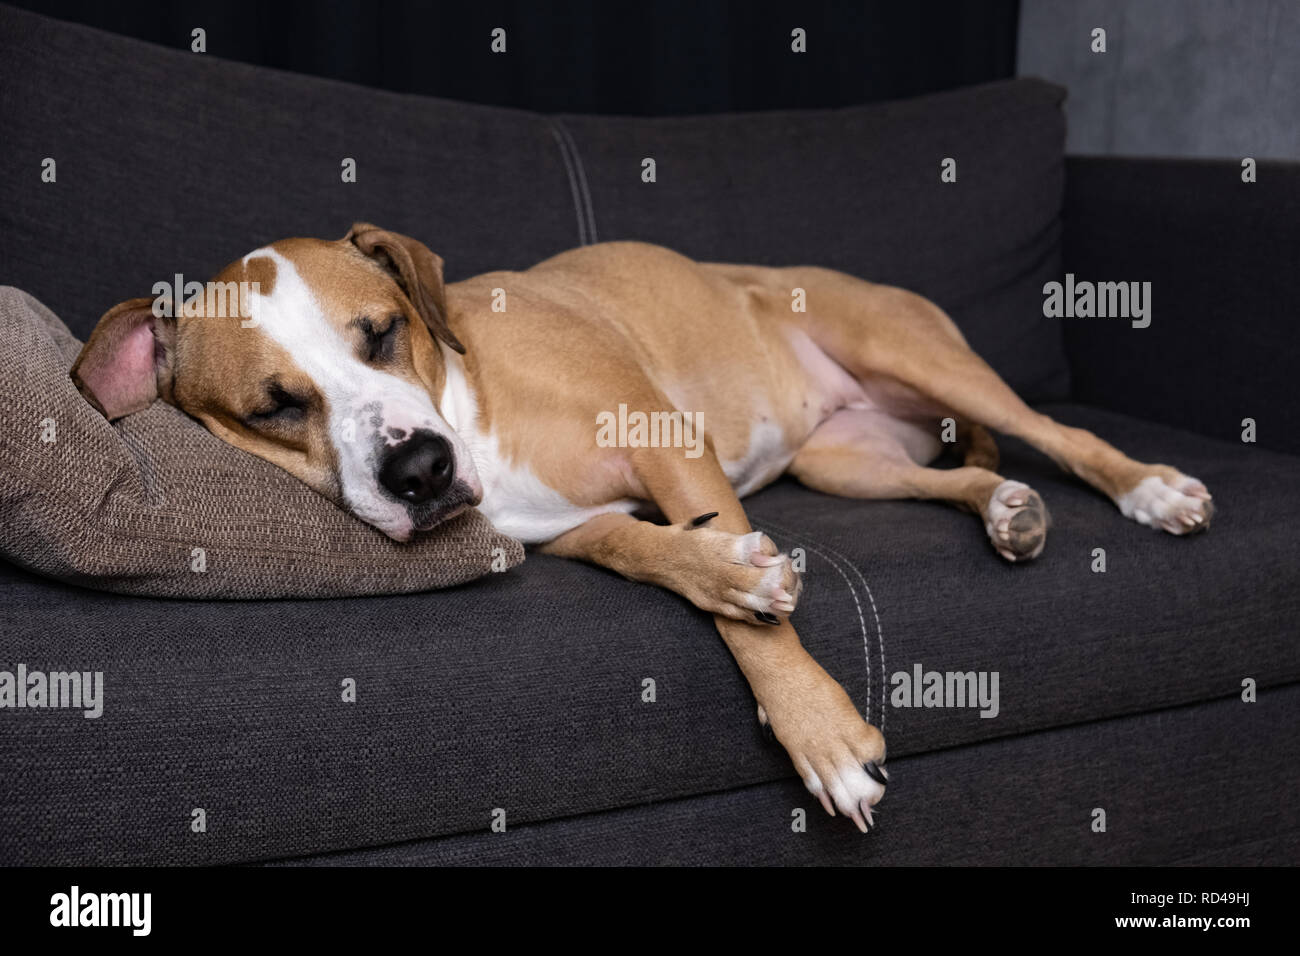 Cane che dorme sul divano. Ritratto di staffordshire terrier in appoggio su un divano nel soggiorno accogliente Foto Stock